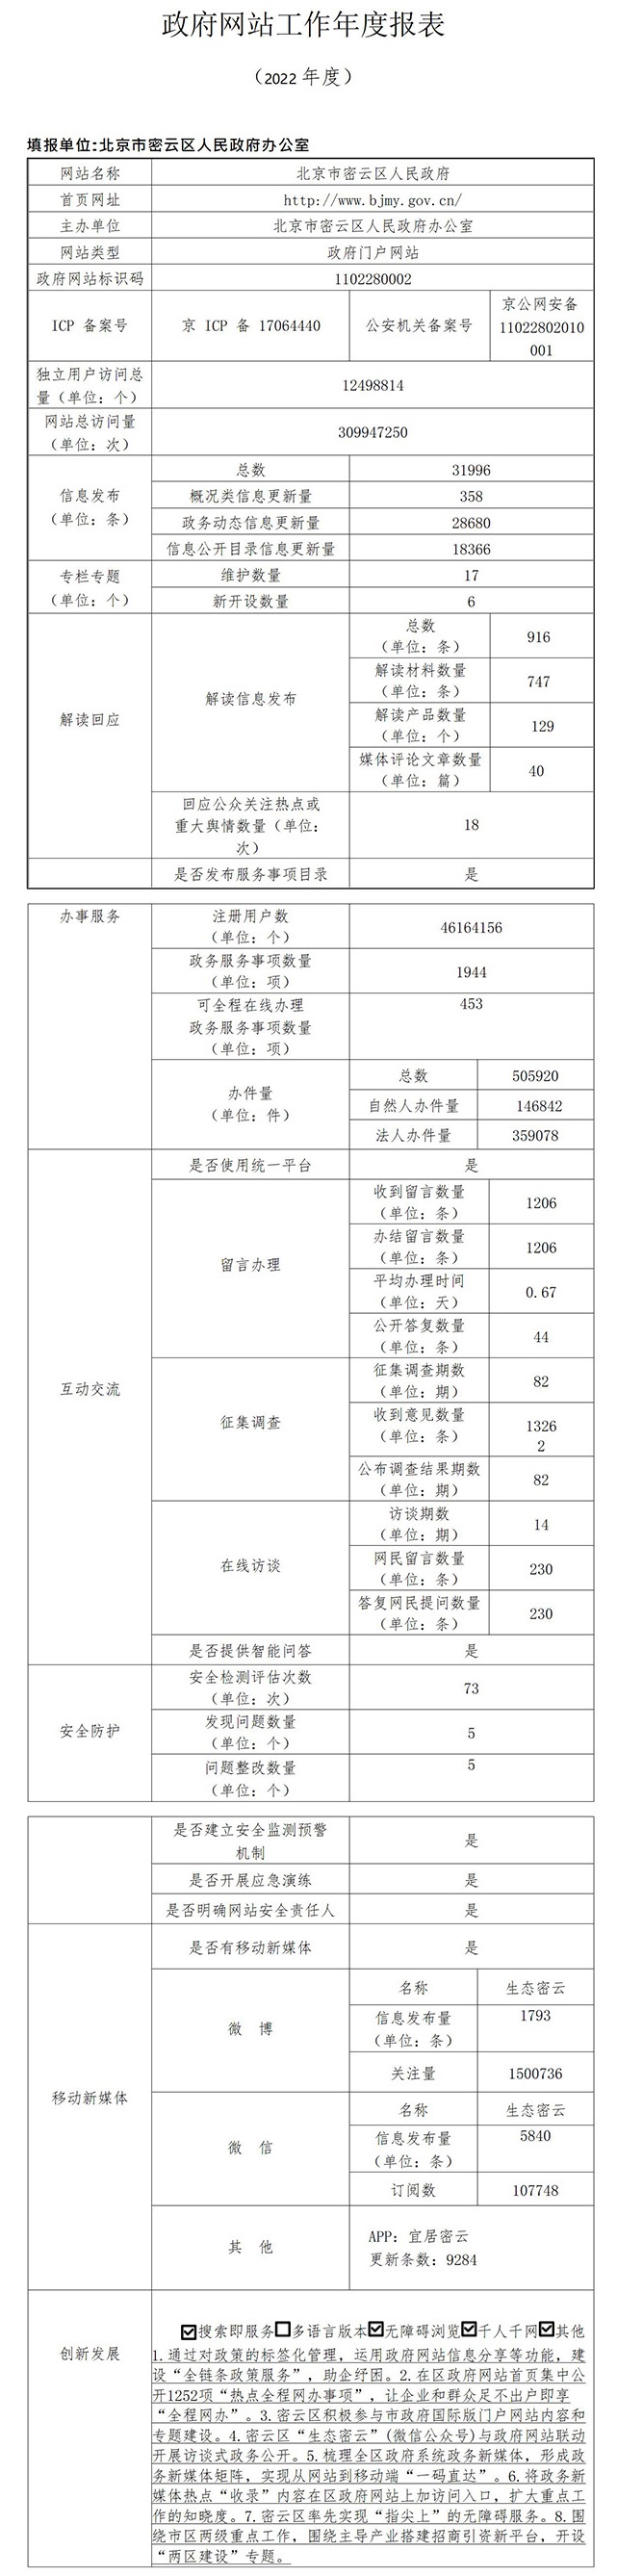 北京市密雲區人民政府網站工作年度報表（2022 年度）.jpg